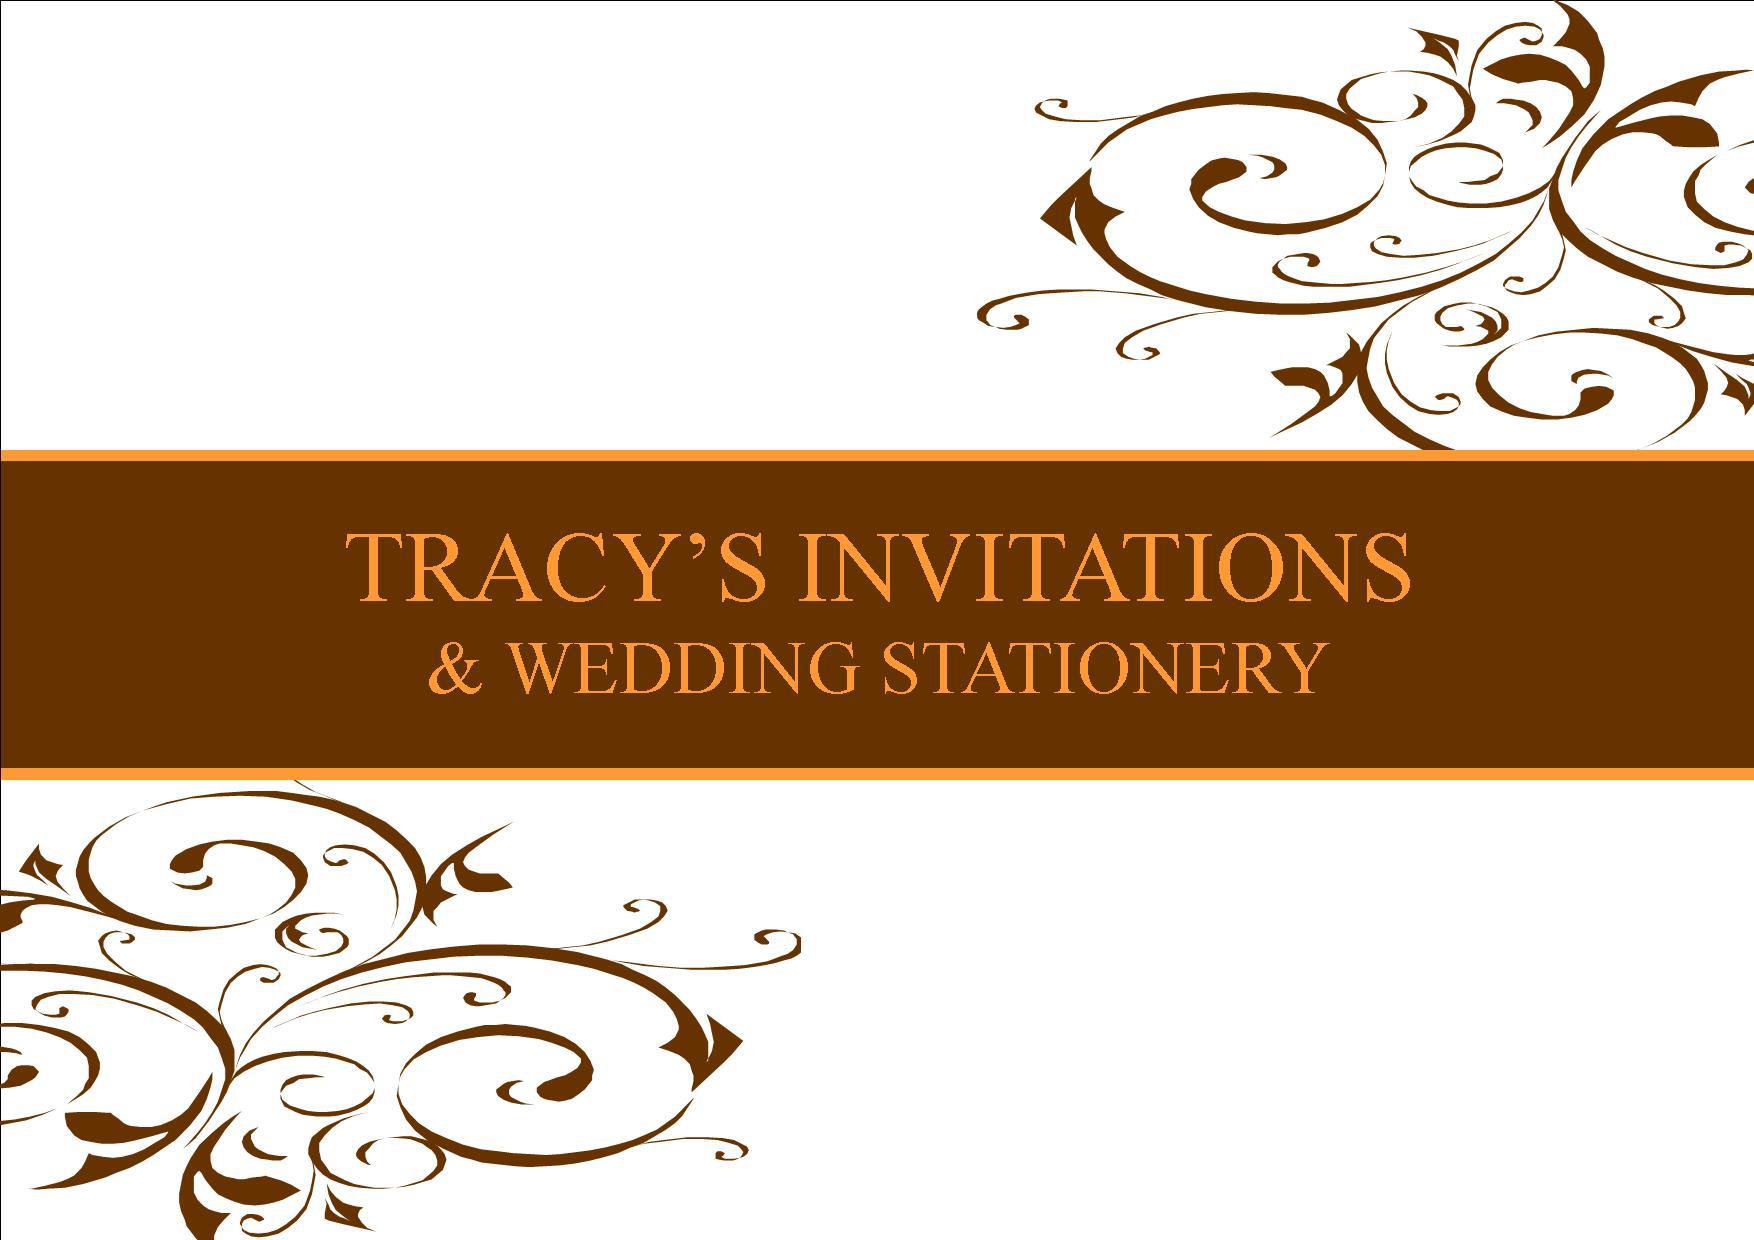 Tracys Invitations